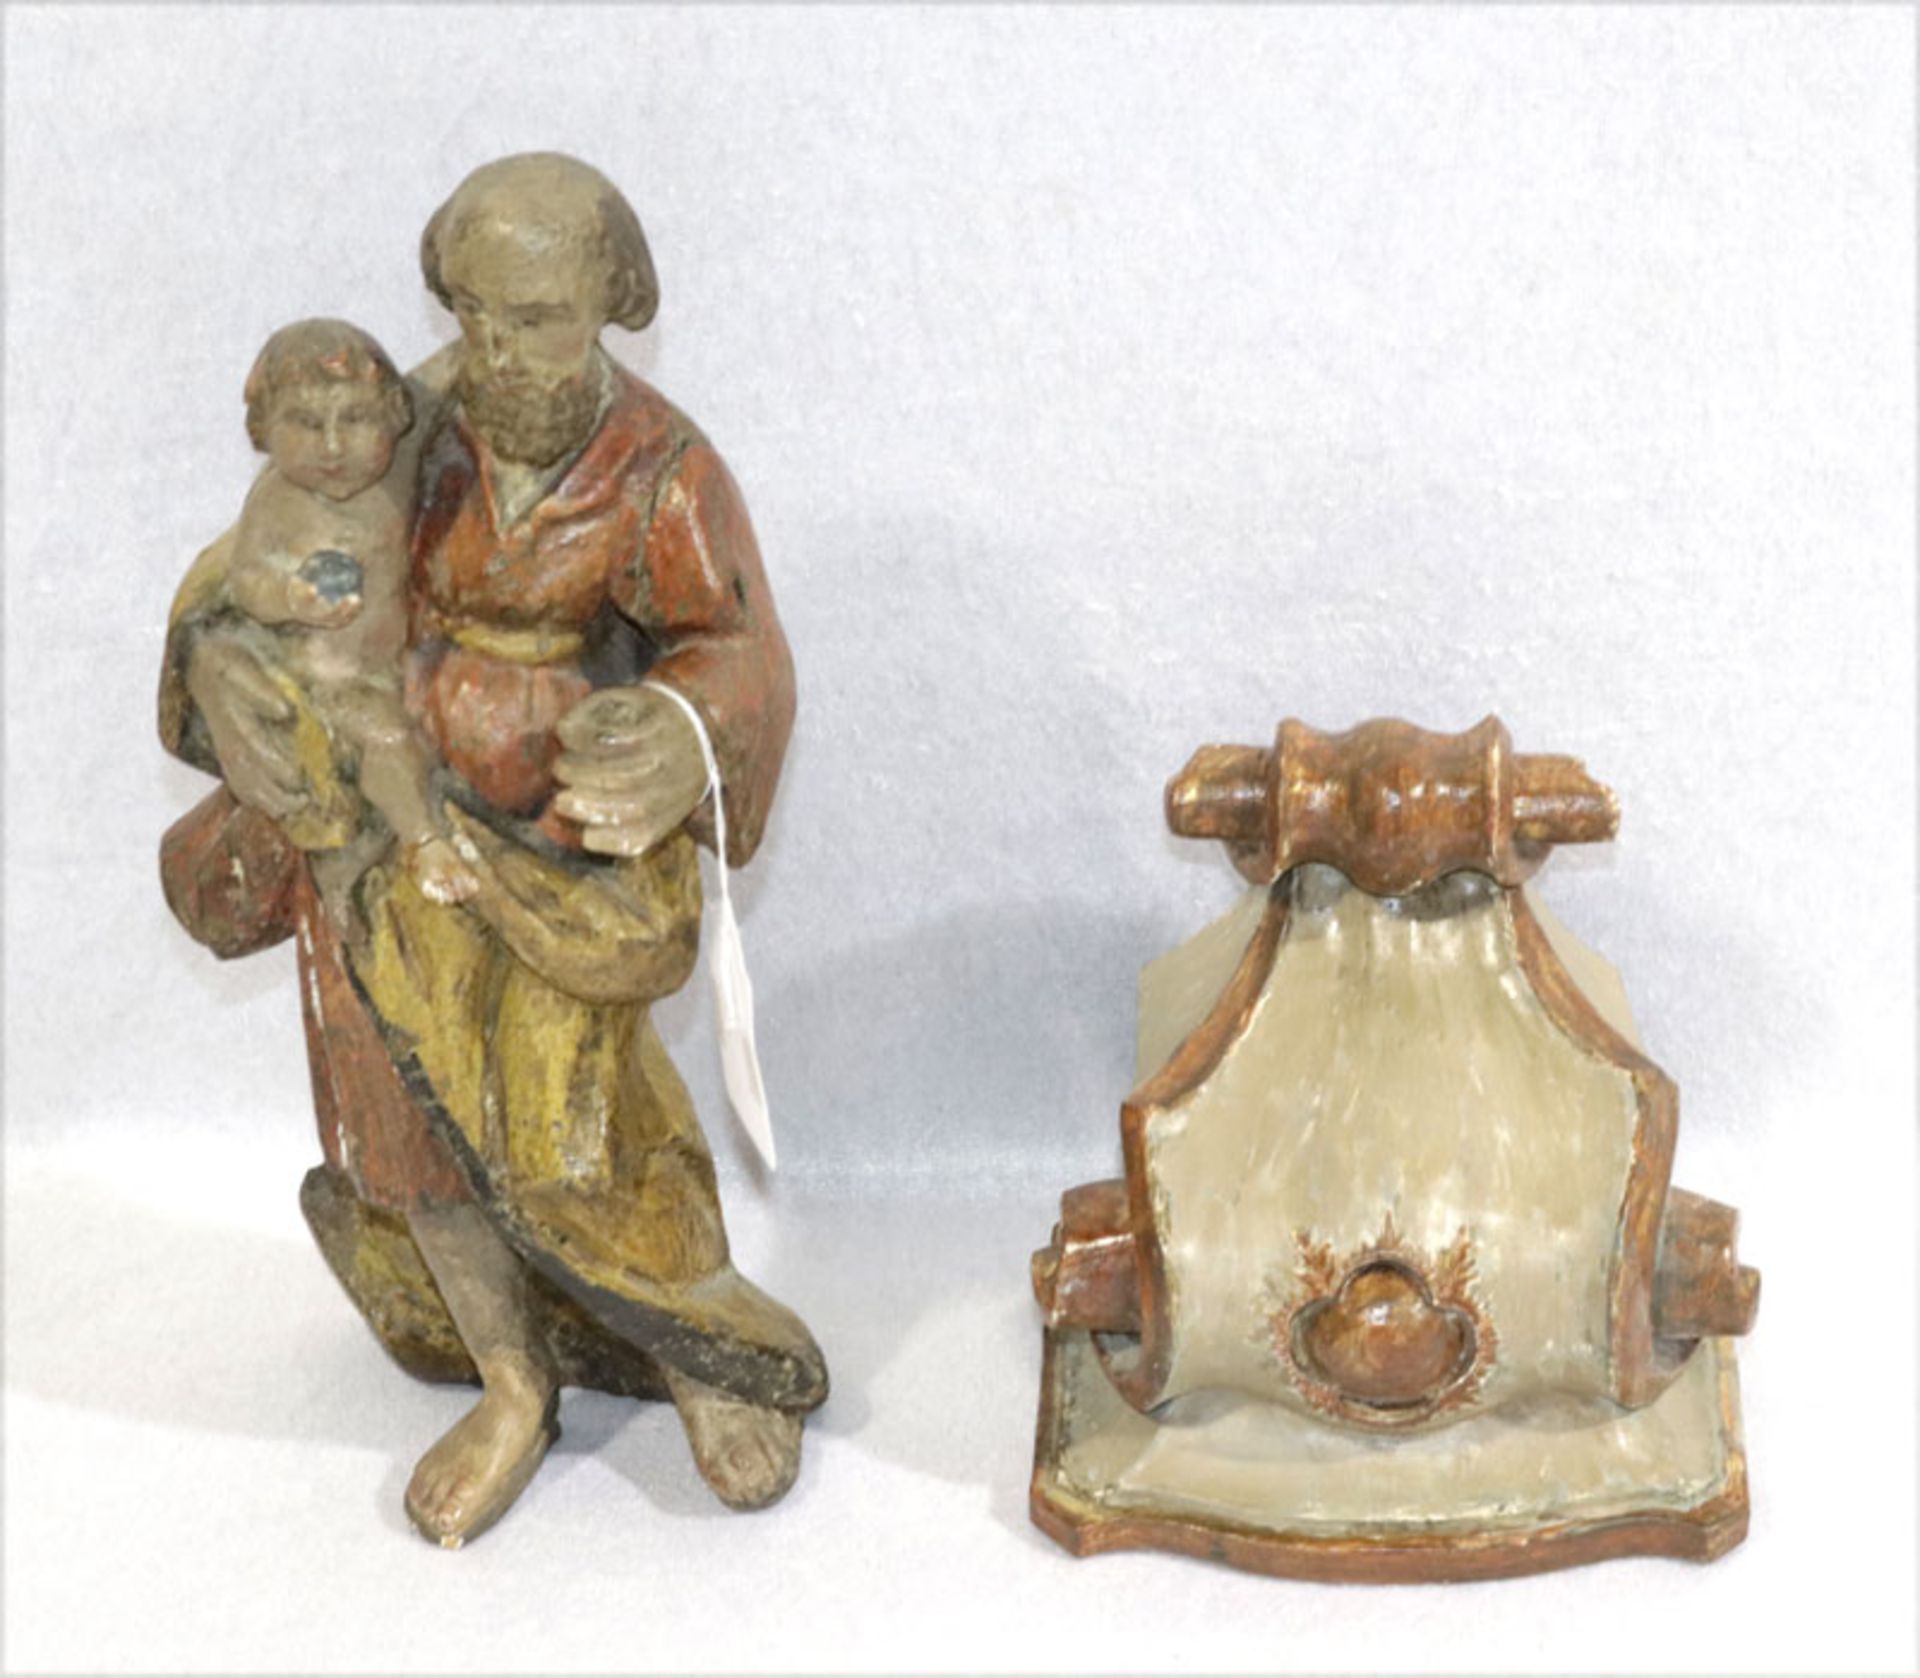 Holz Figurenskulptur 'Heiliger Antonius mit Kind', Lilien fehlen, farbig gefaßt, beschädigt und